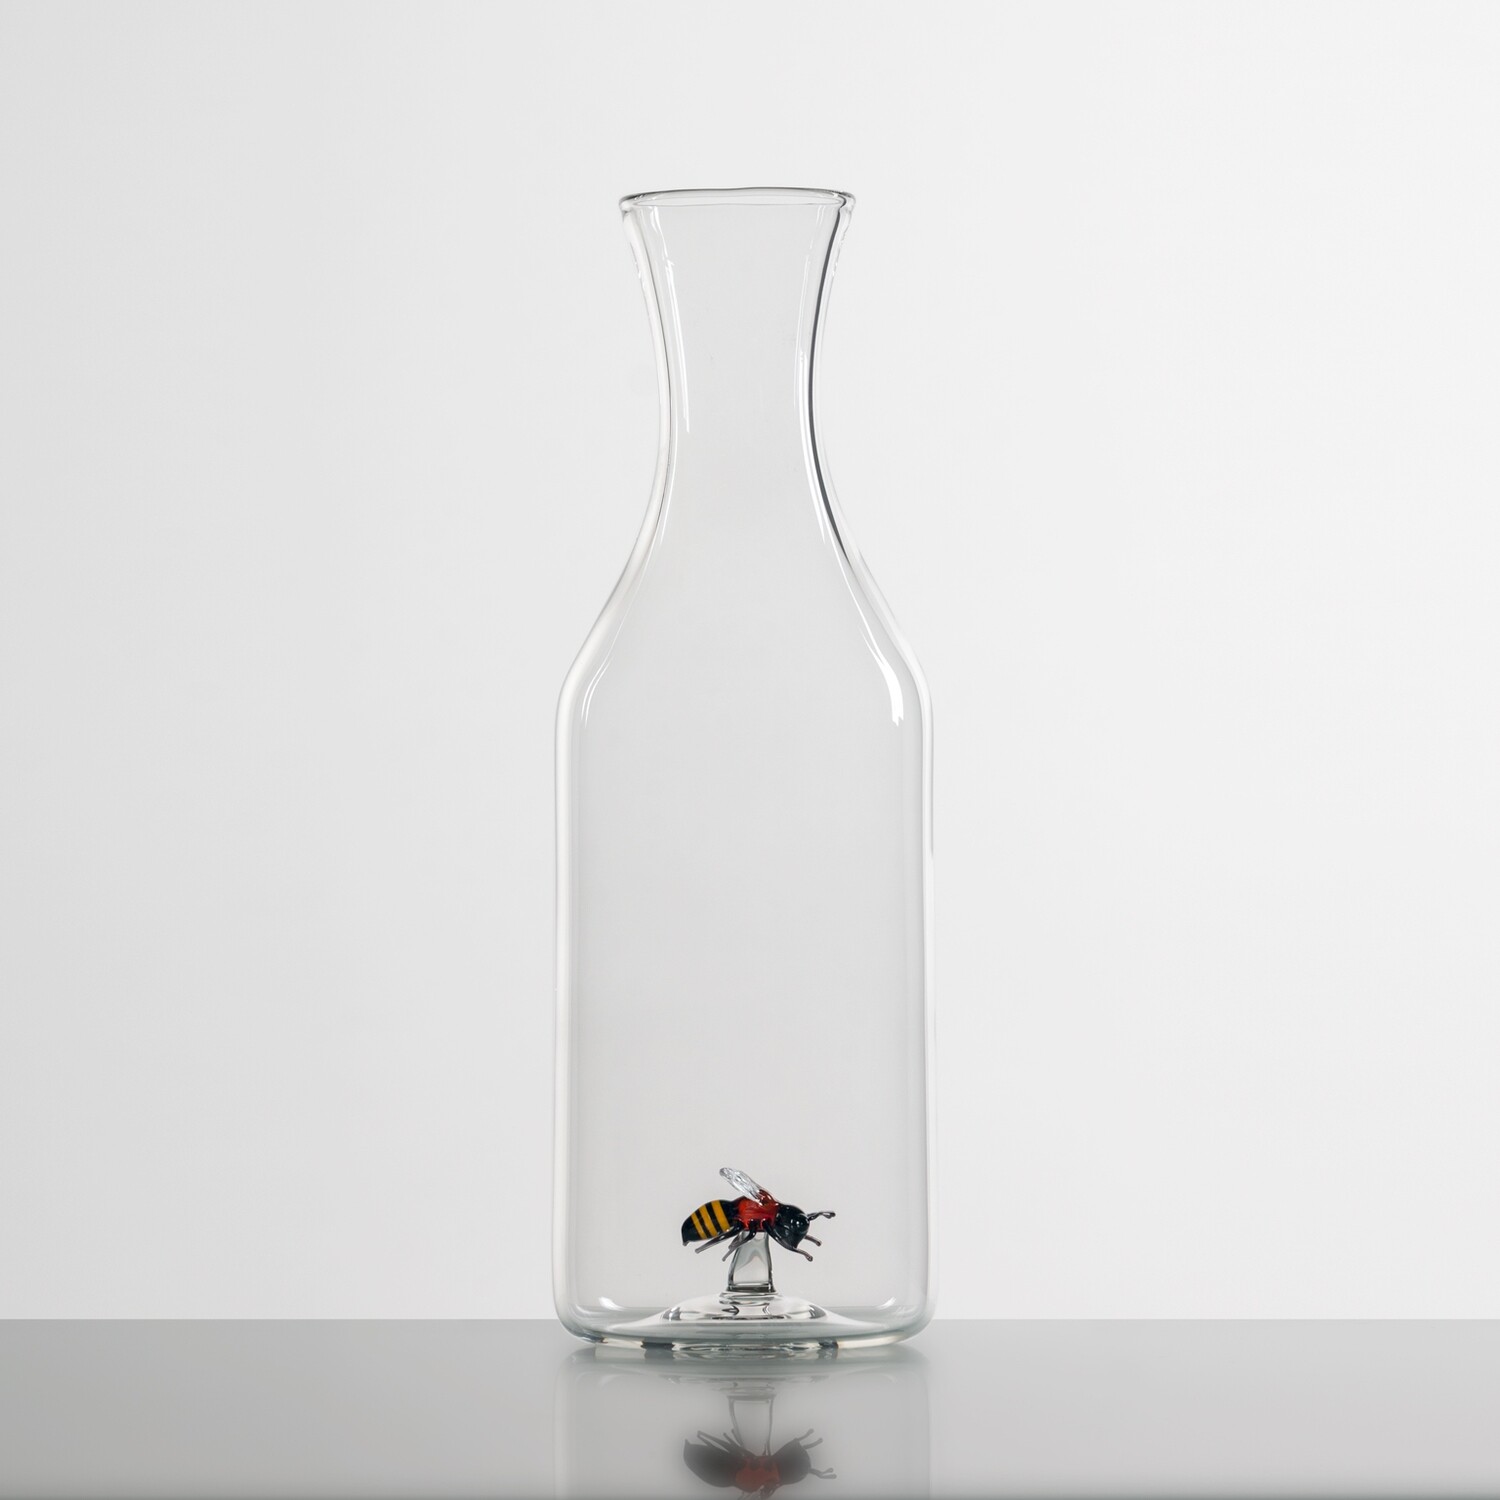 Bee Bottle